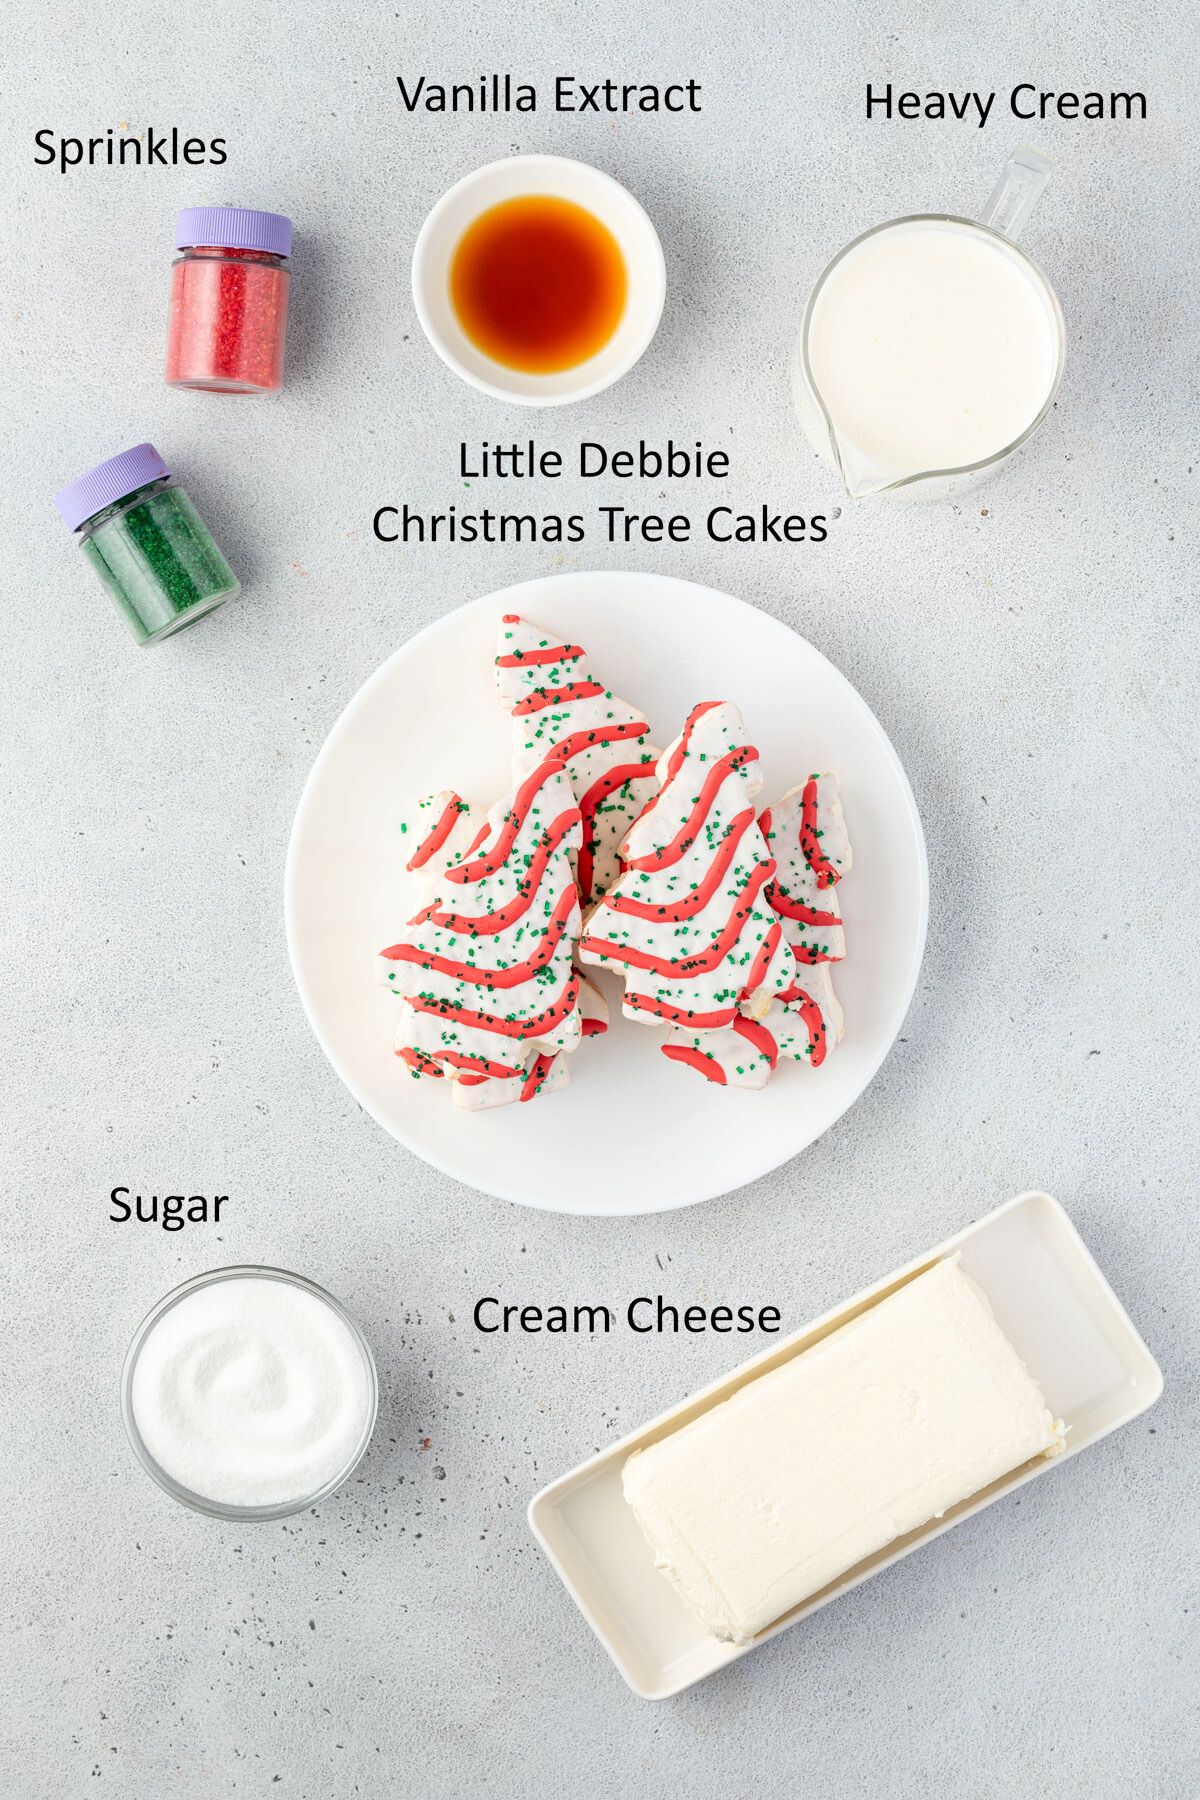 Litlte Debbie Christmas Tree Dip ingredients.